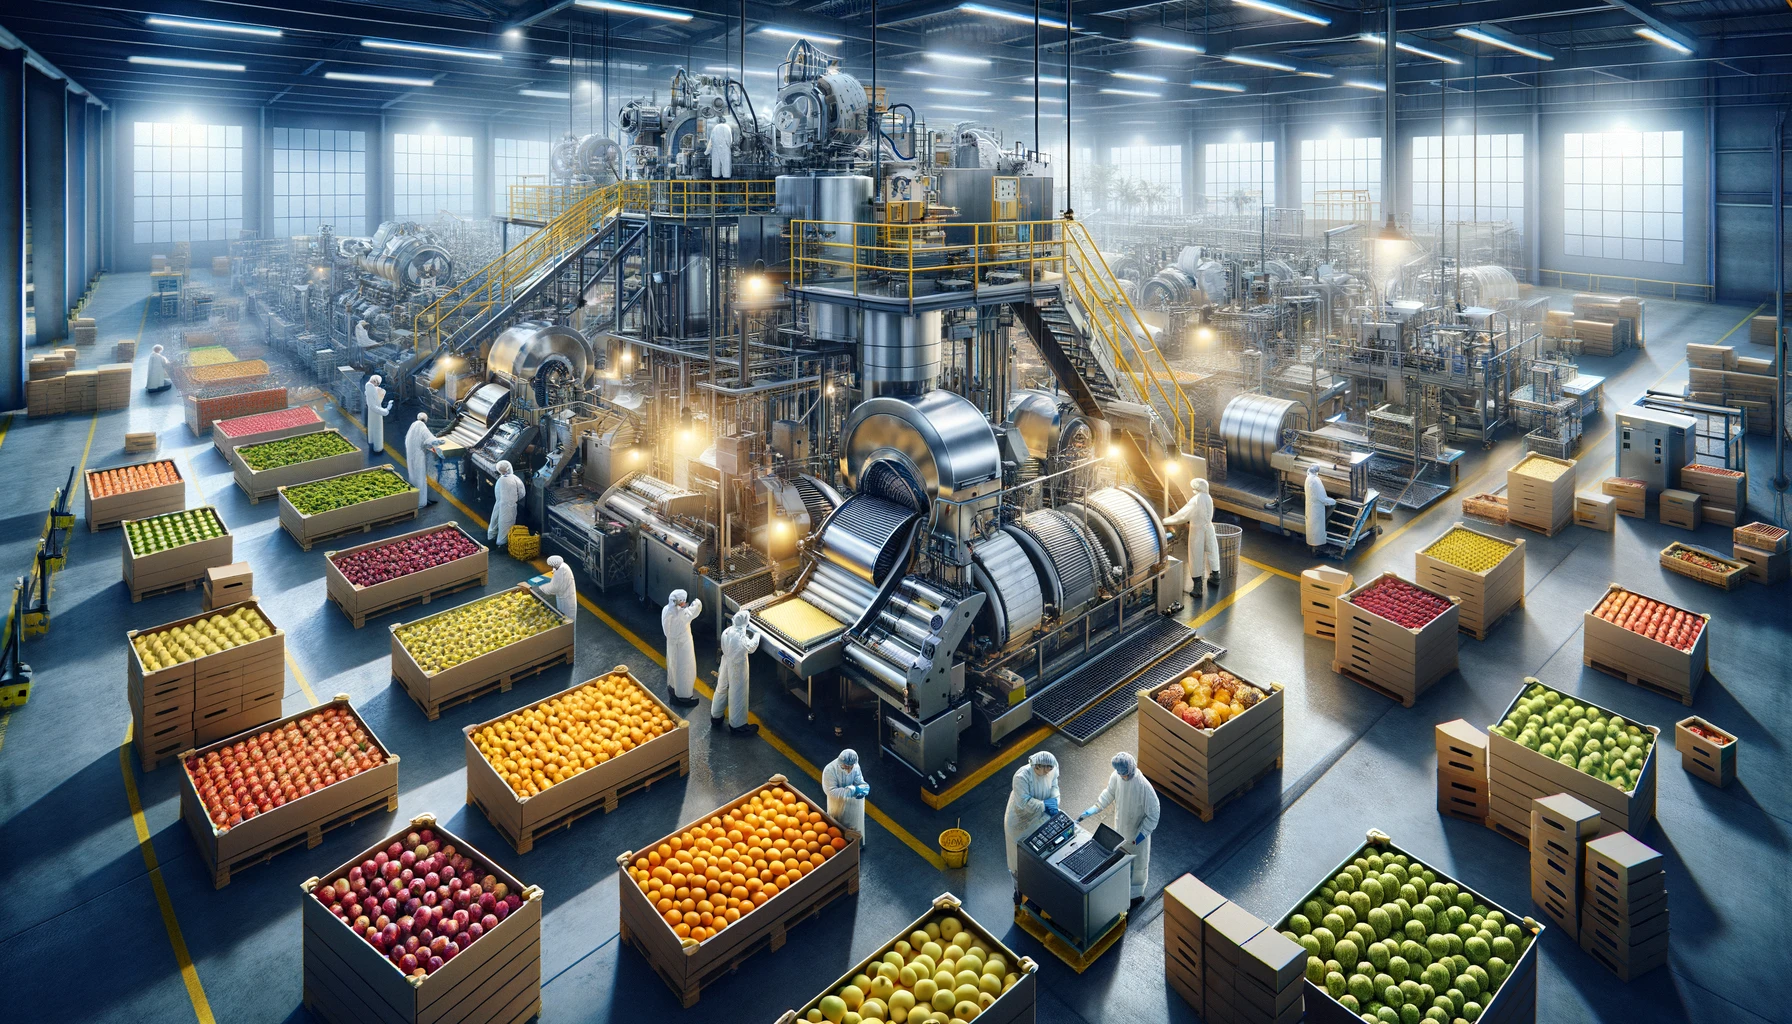 FruitCraftersa Hoş Geldiniz: Önde Gelen Endüstriyel Meyve İşleme Ortağınız